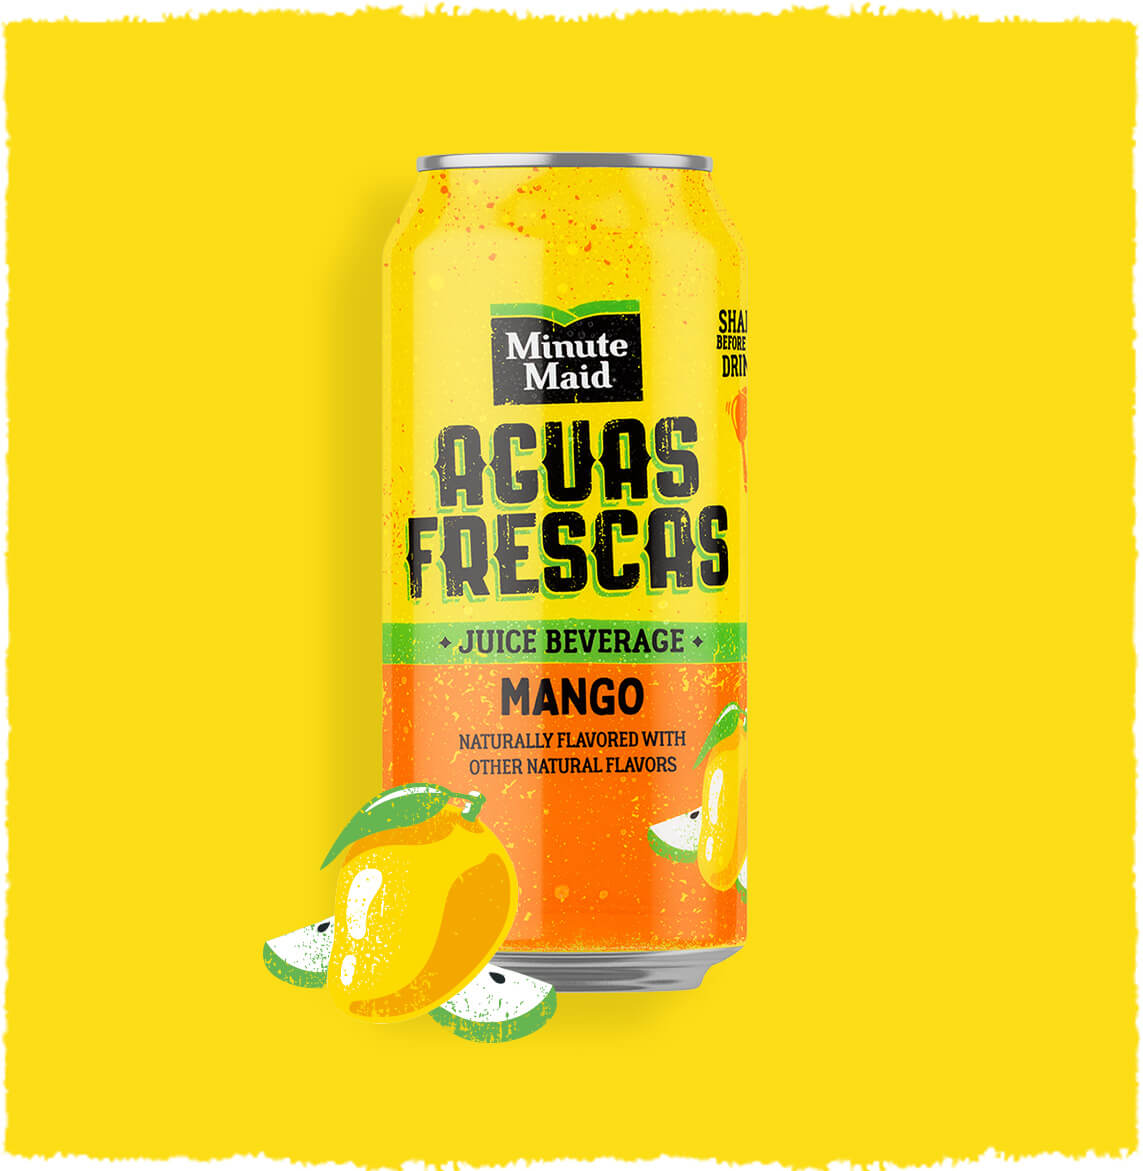 Minute Maid Aguas Frescas Mango can